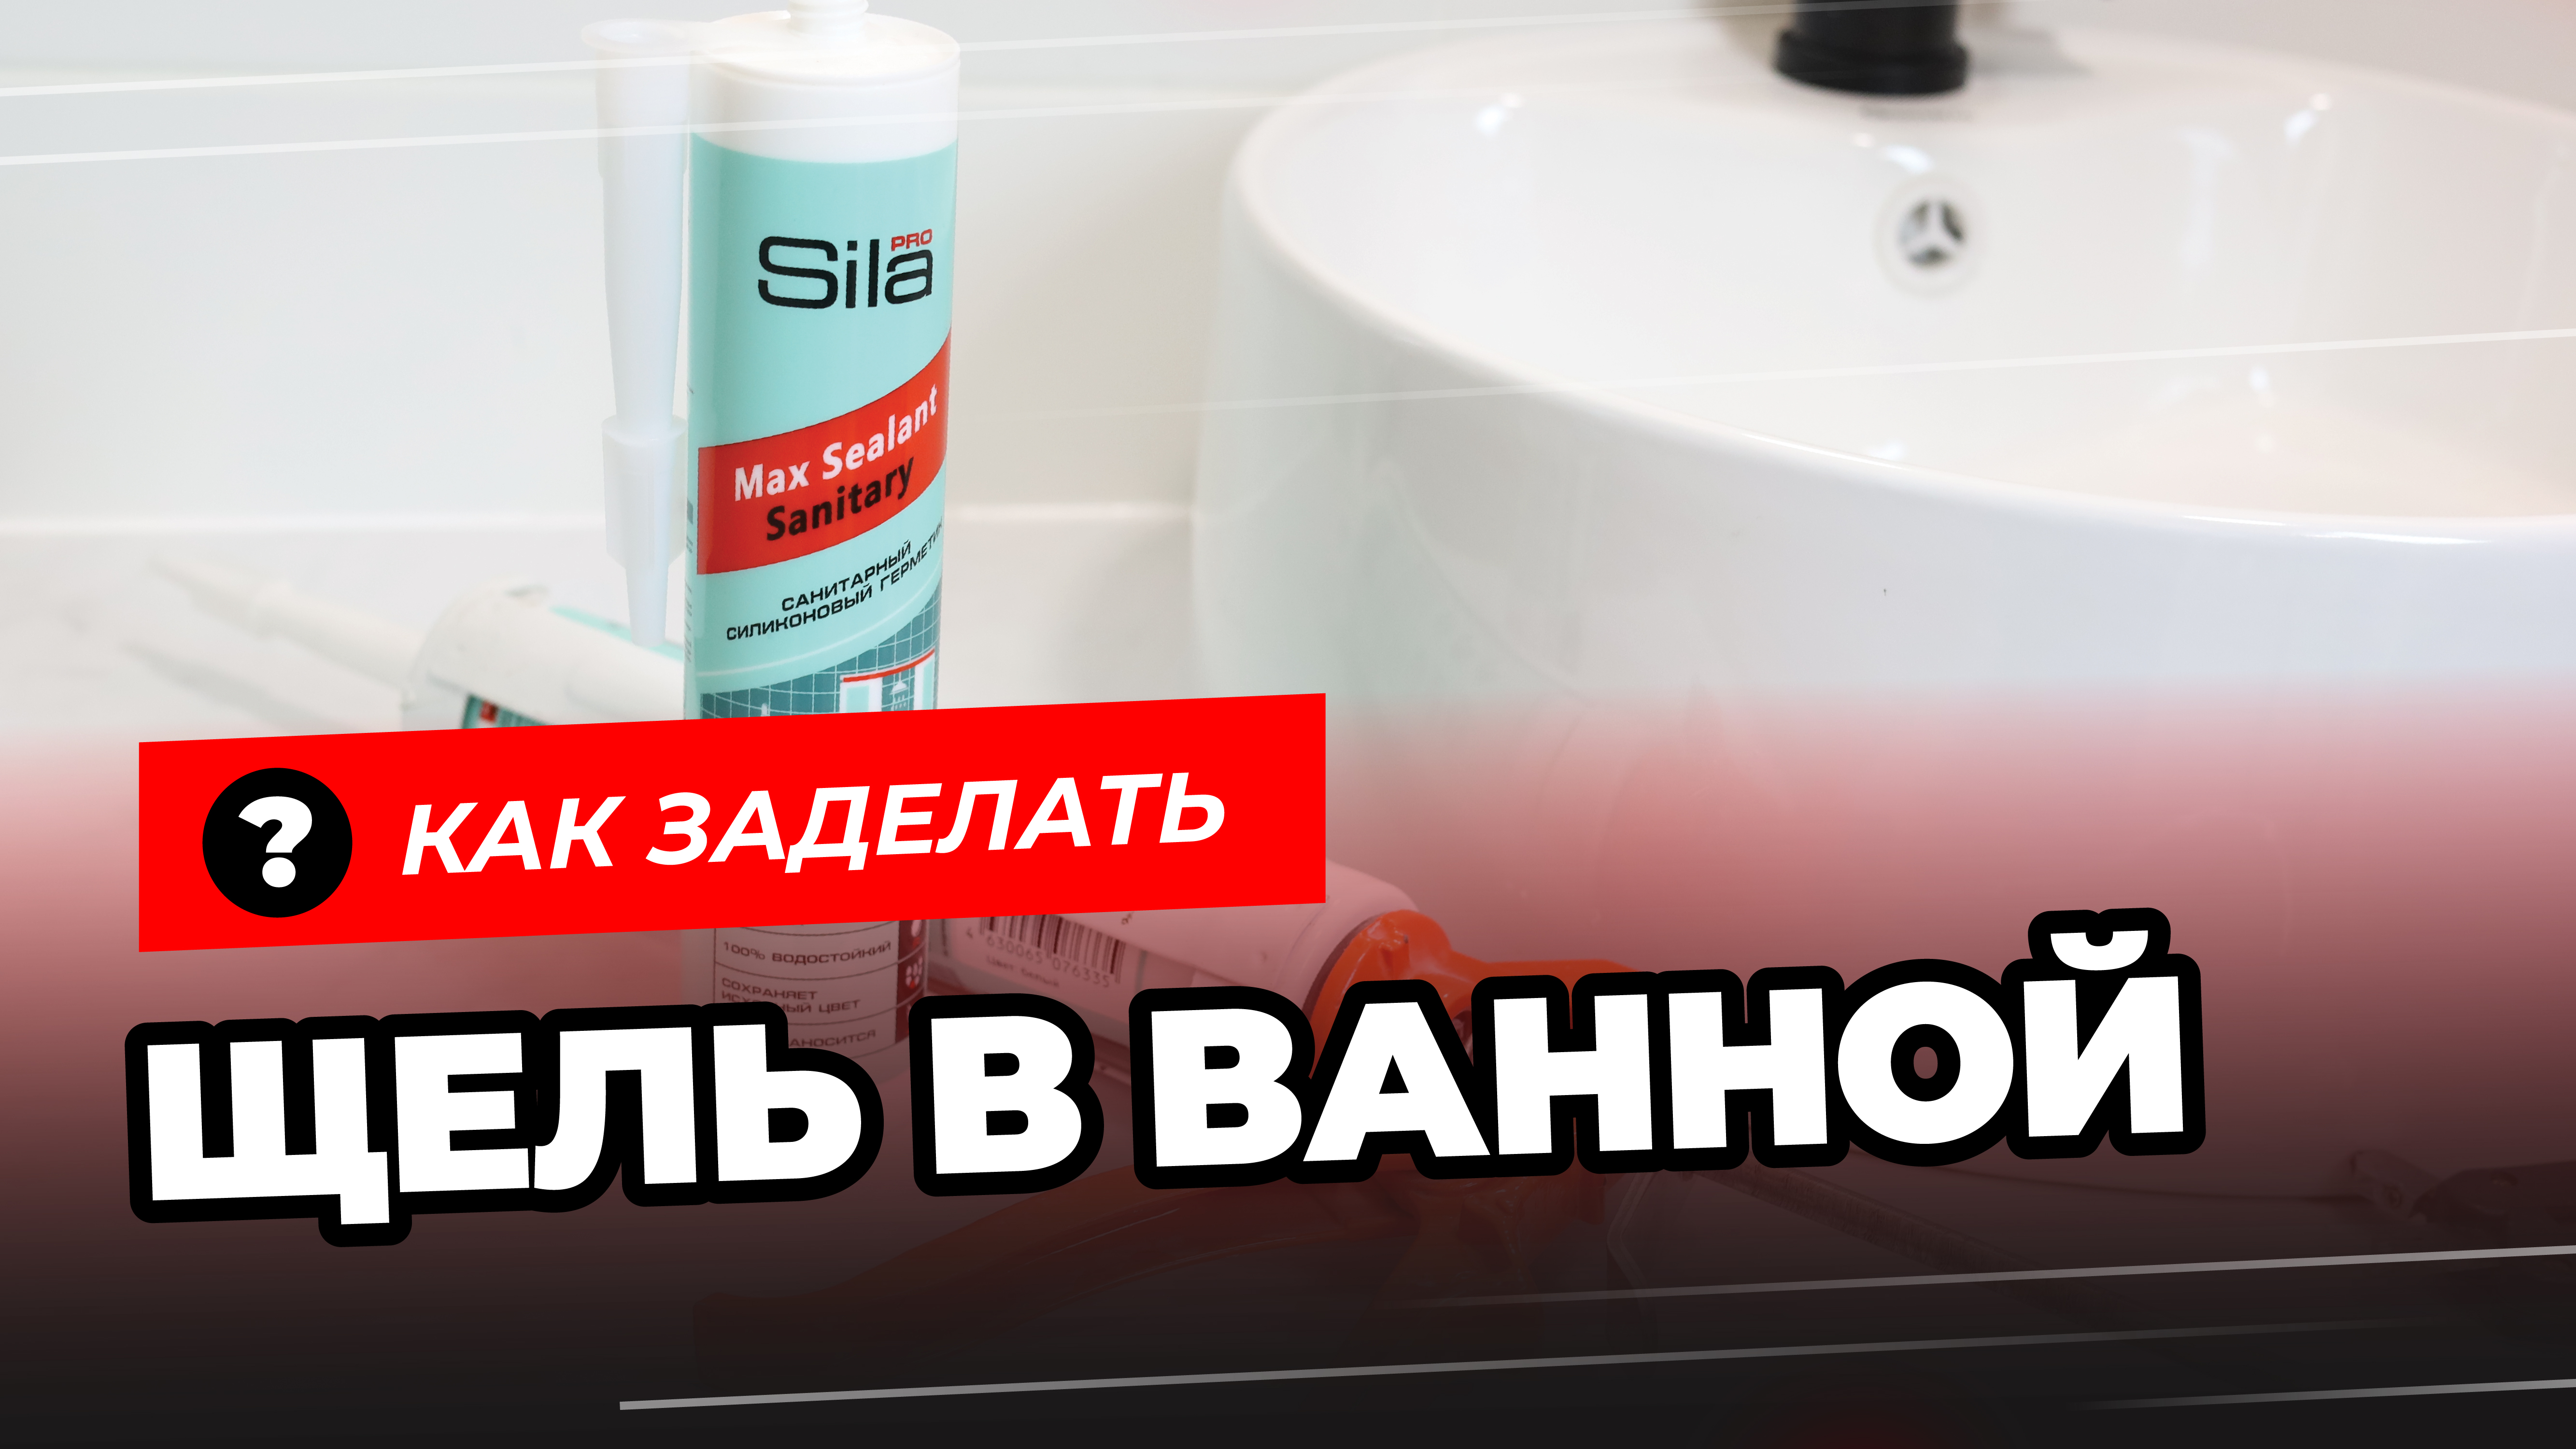 Как заделать щель в ванной? Санитарный силиконовый герметик для ванной Sila PRO Max Sealant Sanitary